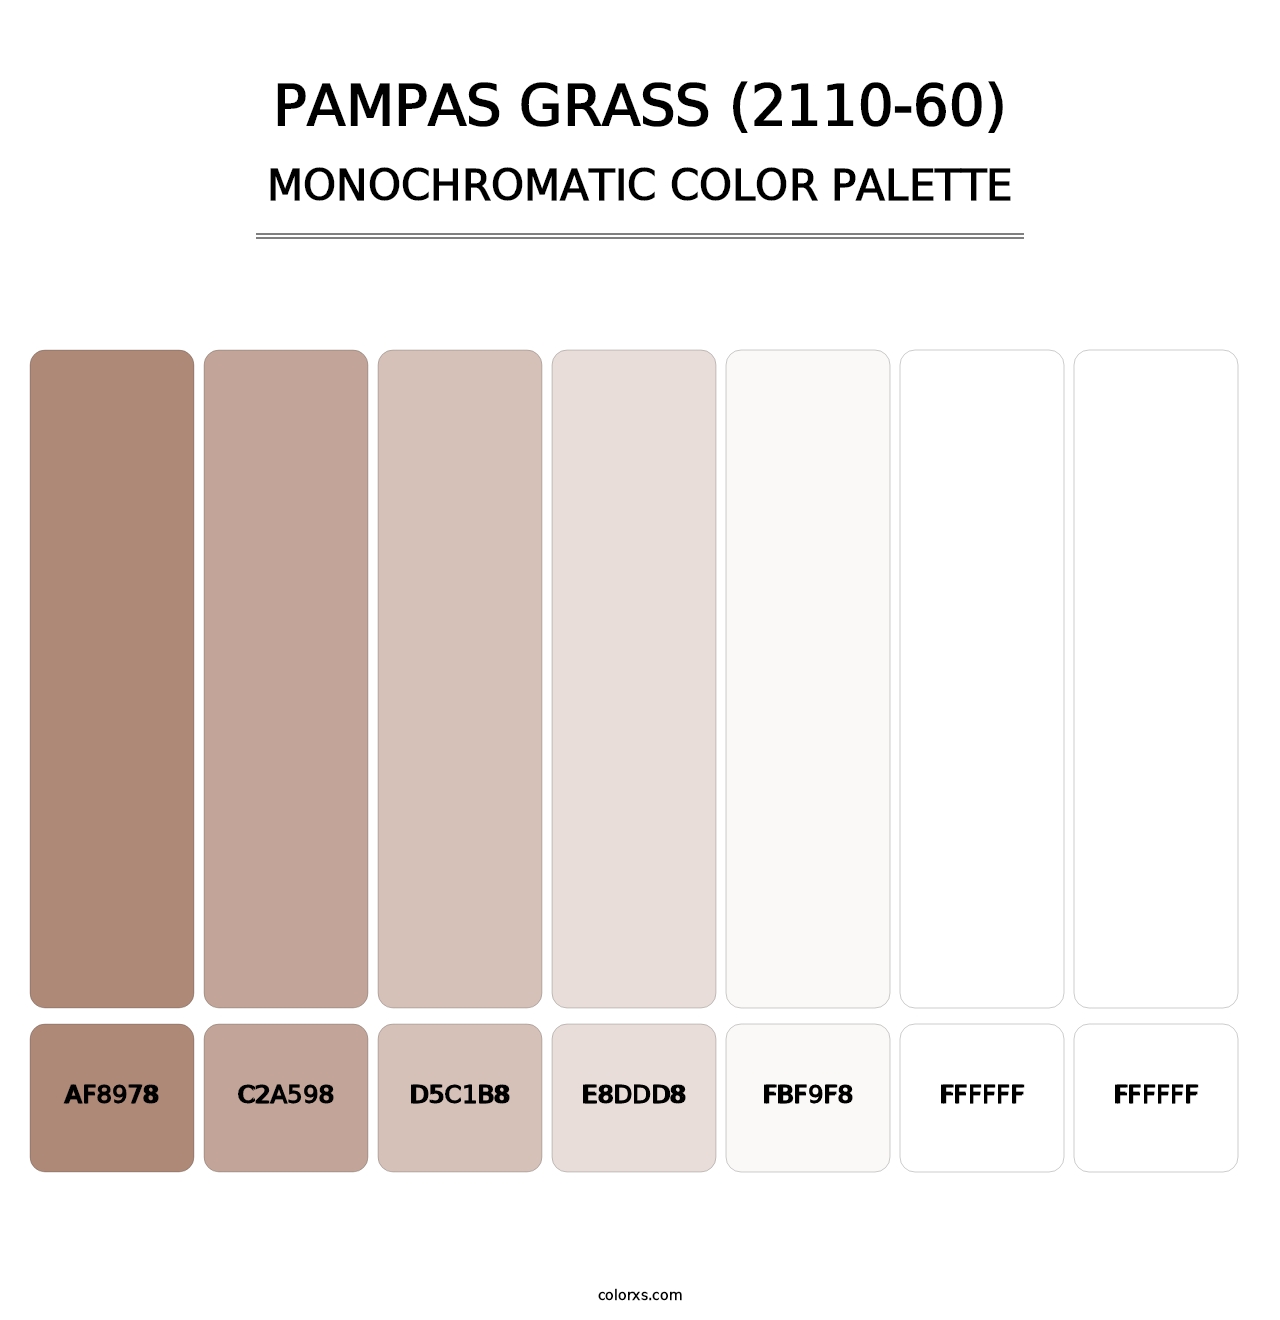 Pampas Grass (2110-60) - Monochromatic Color Palette